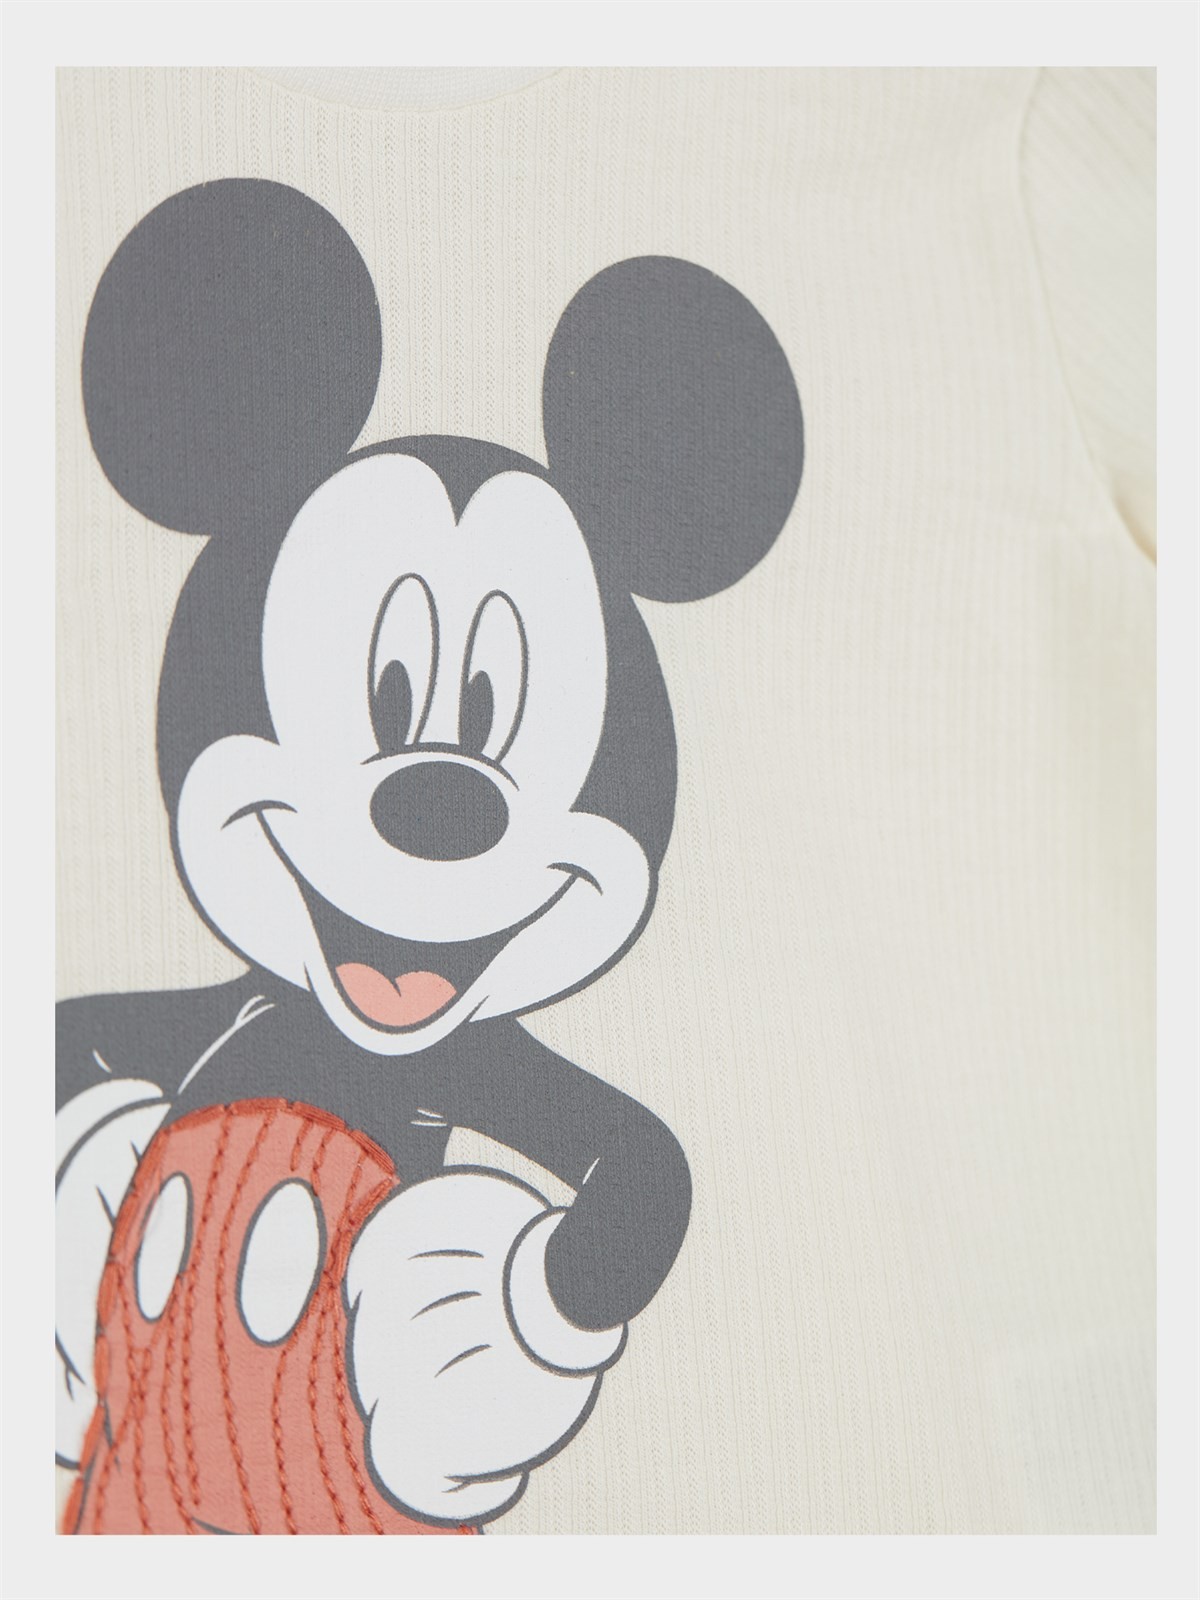 Disney Mickey Mouse Lisanslı Erkek Bebek Tişört ve Şort 2'li Takım 20886